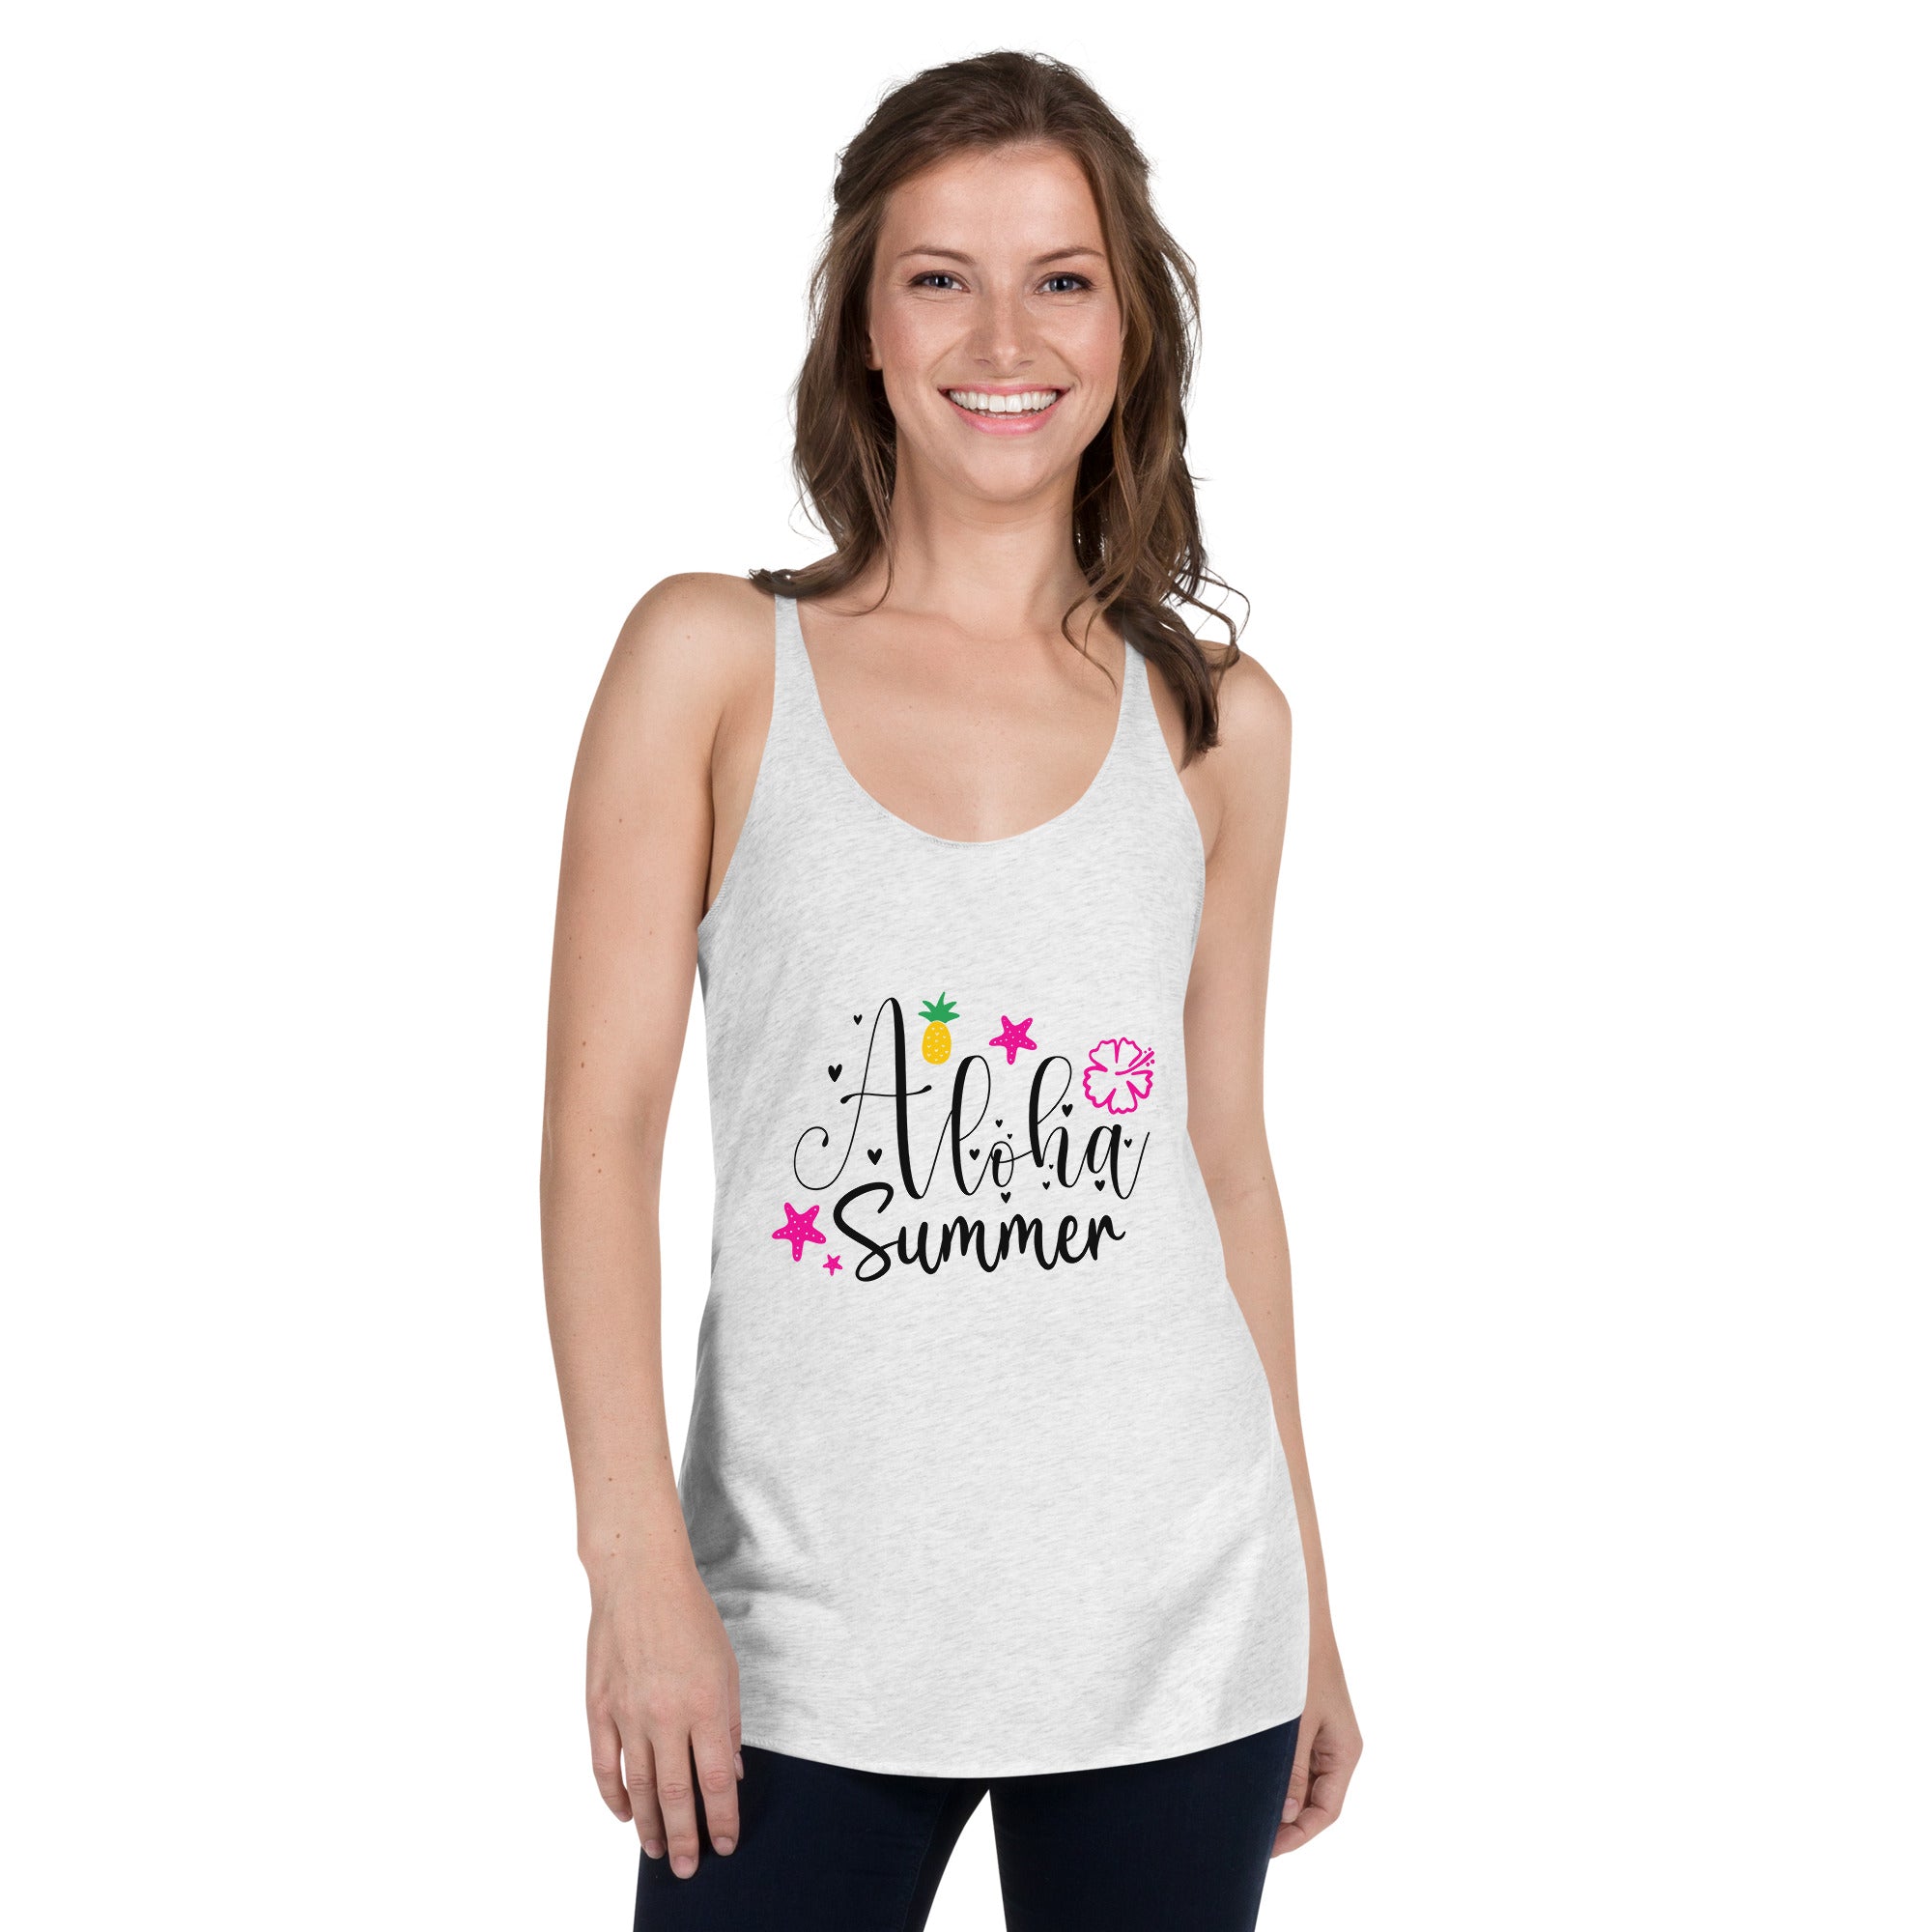 Aloha Summer - Women's Tank Top